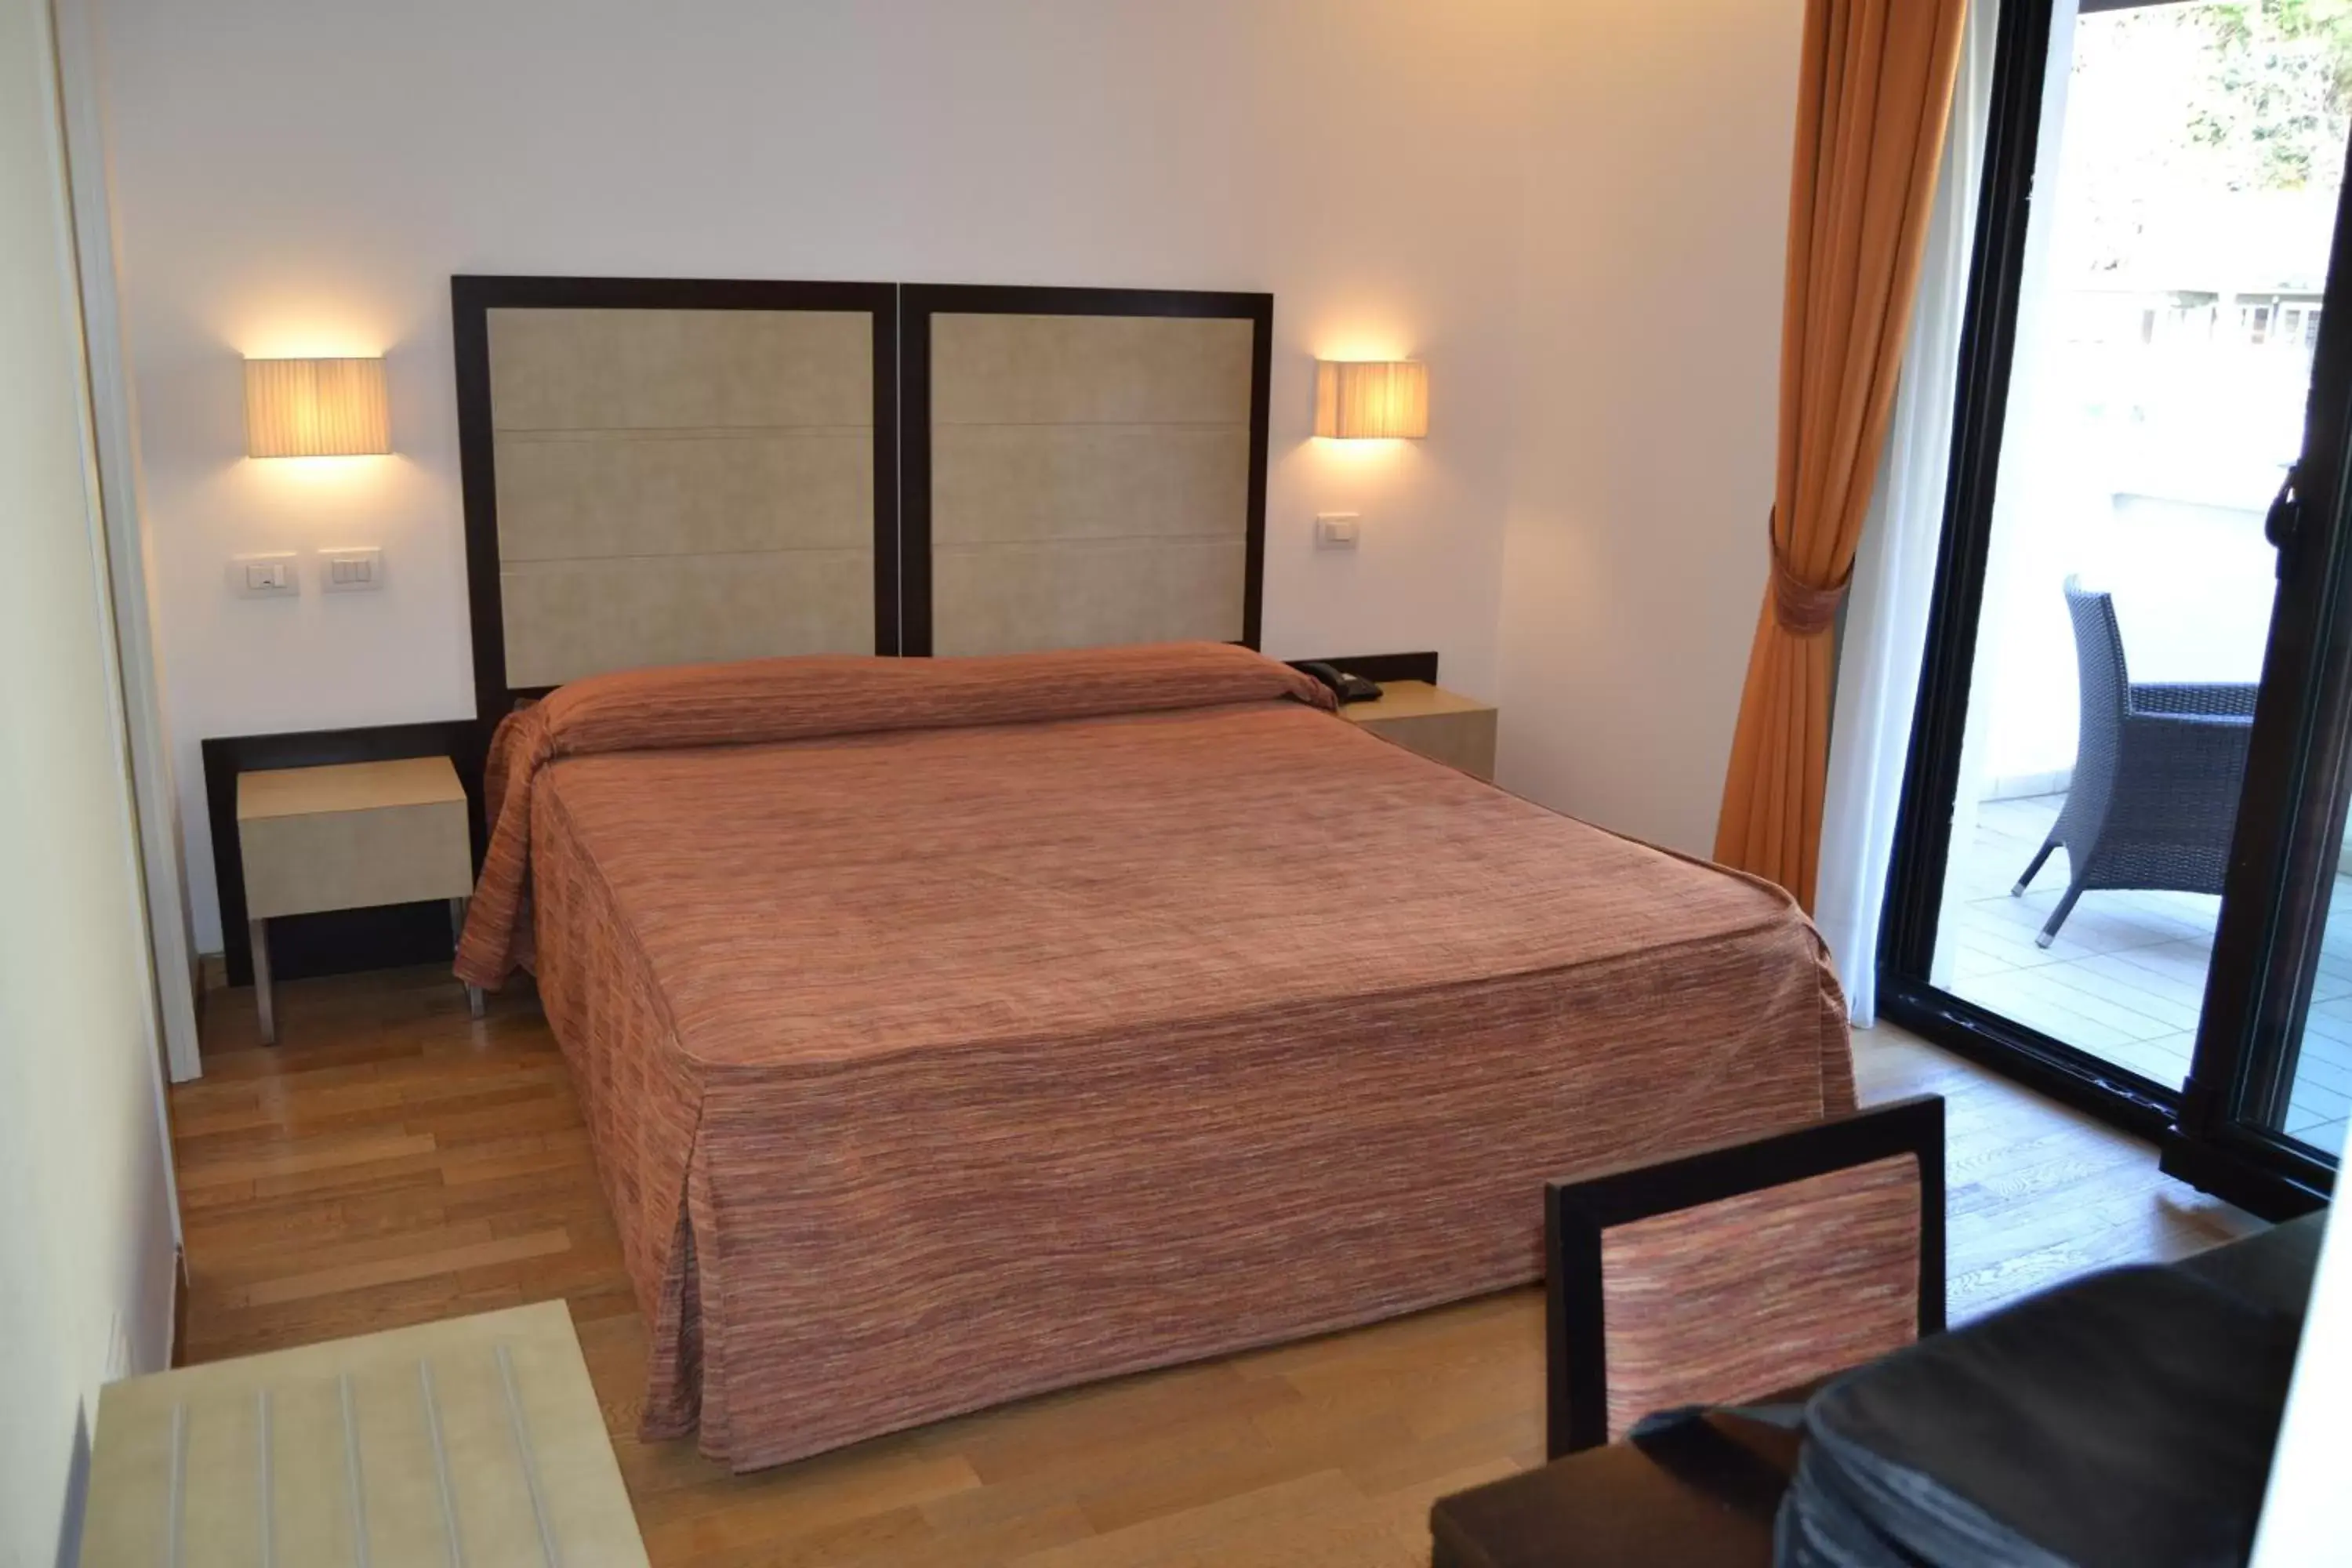 Bed, Room Photo in Hotel Joli